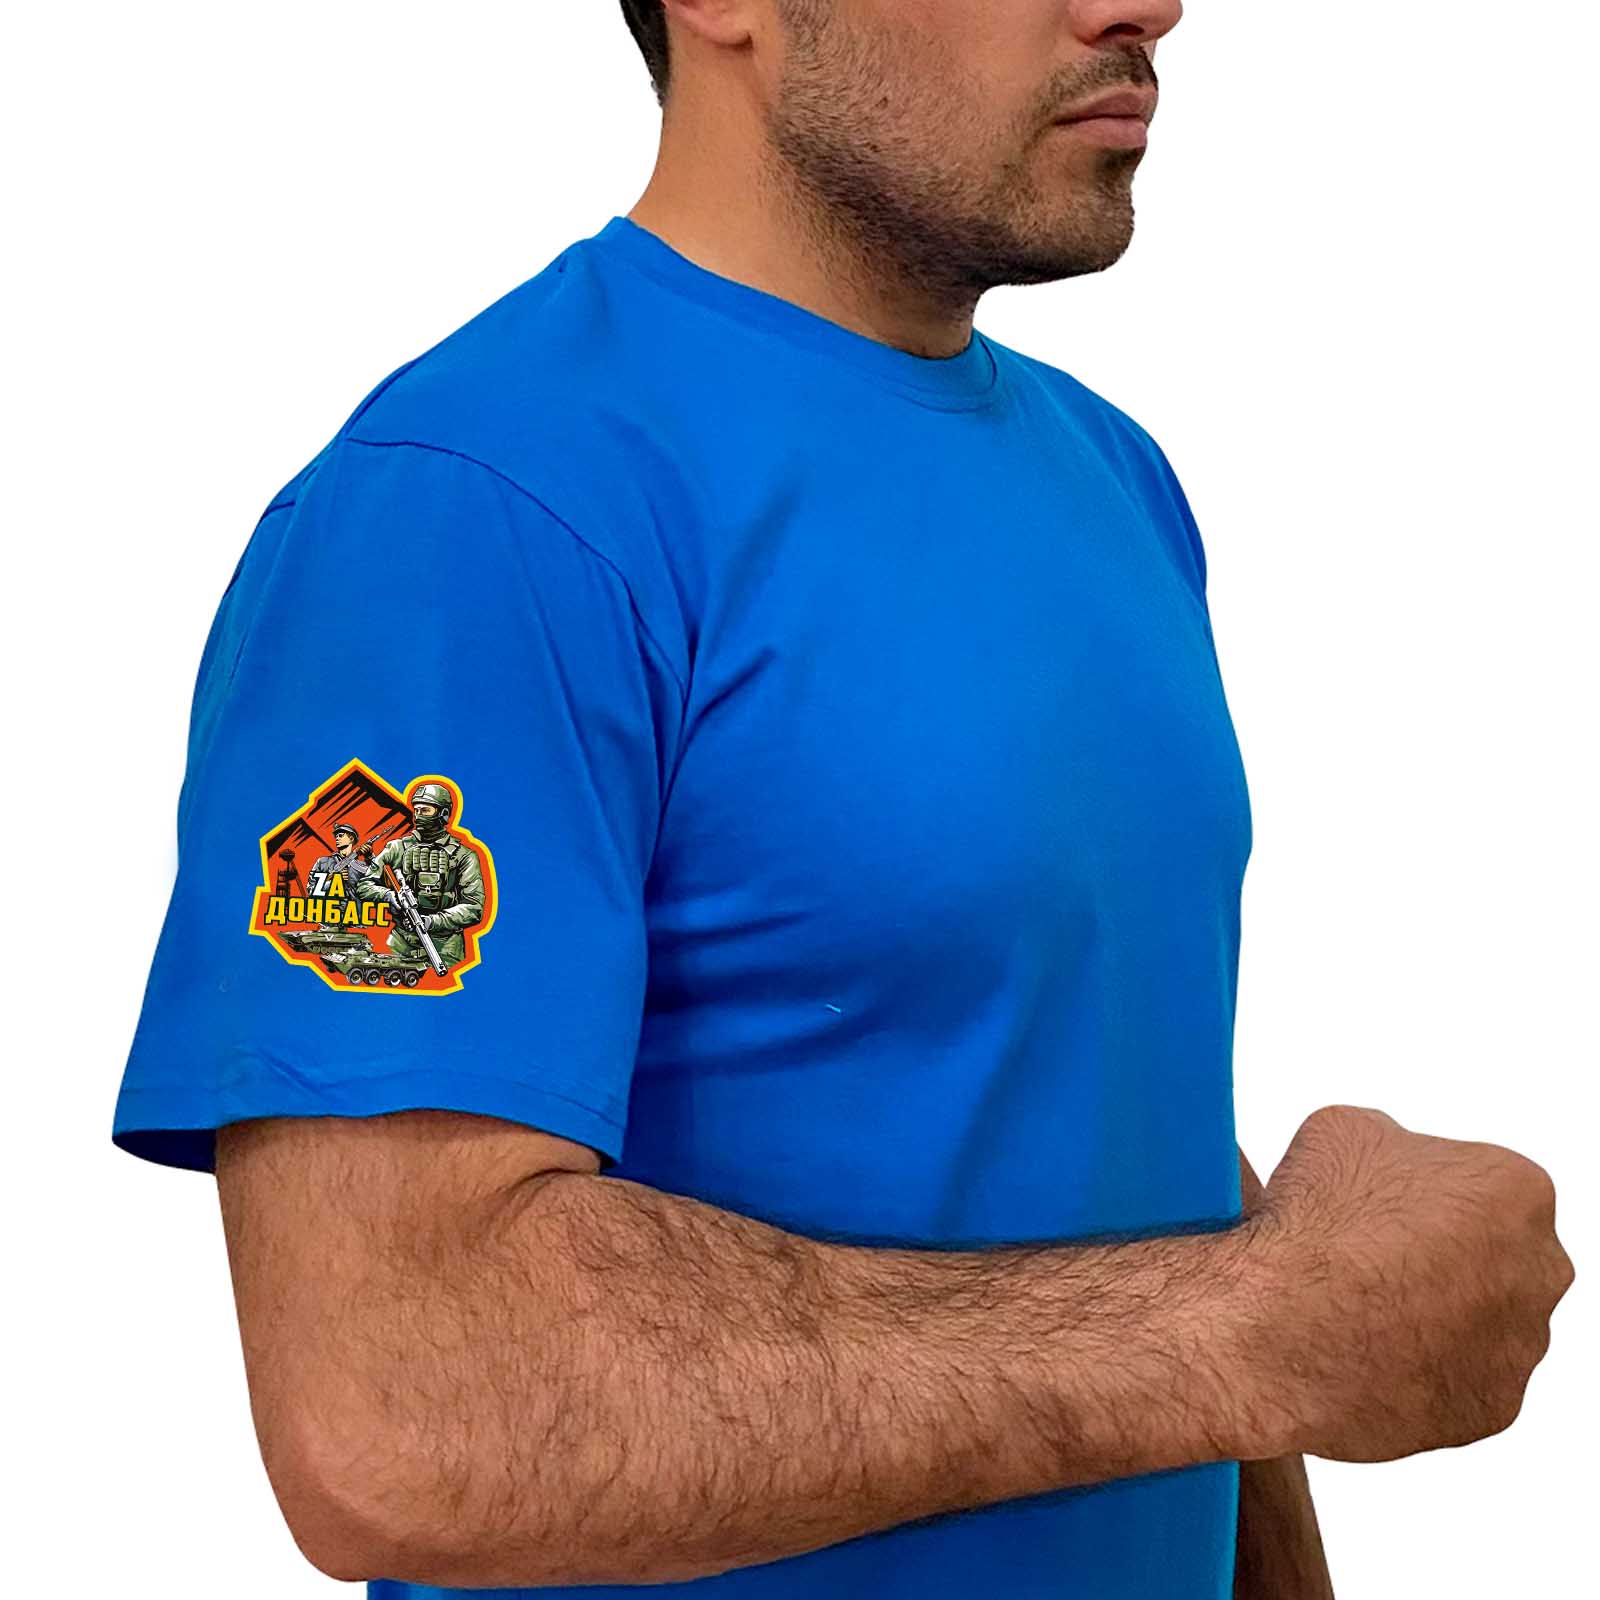 Купить крутую голубую футболку Zа Донбасс по лучшей цене